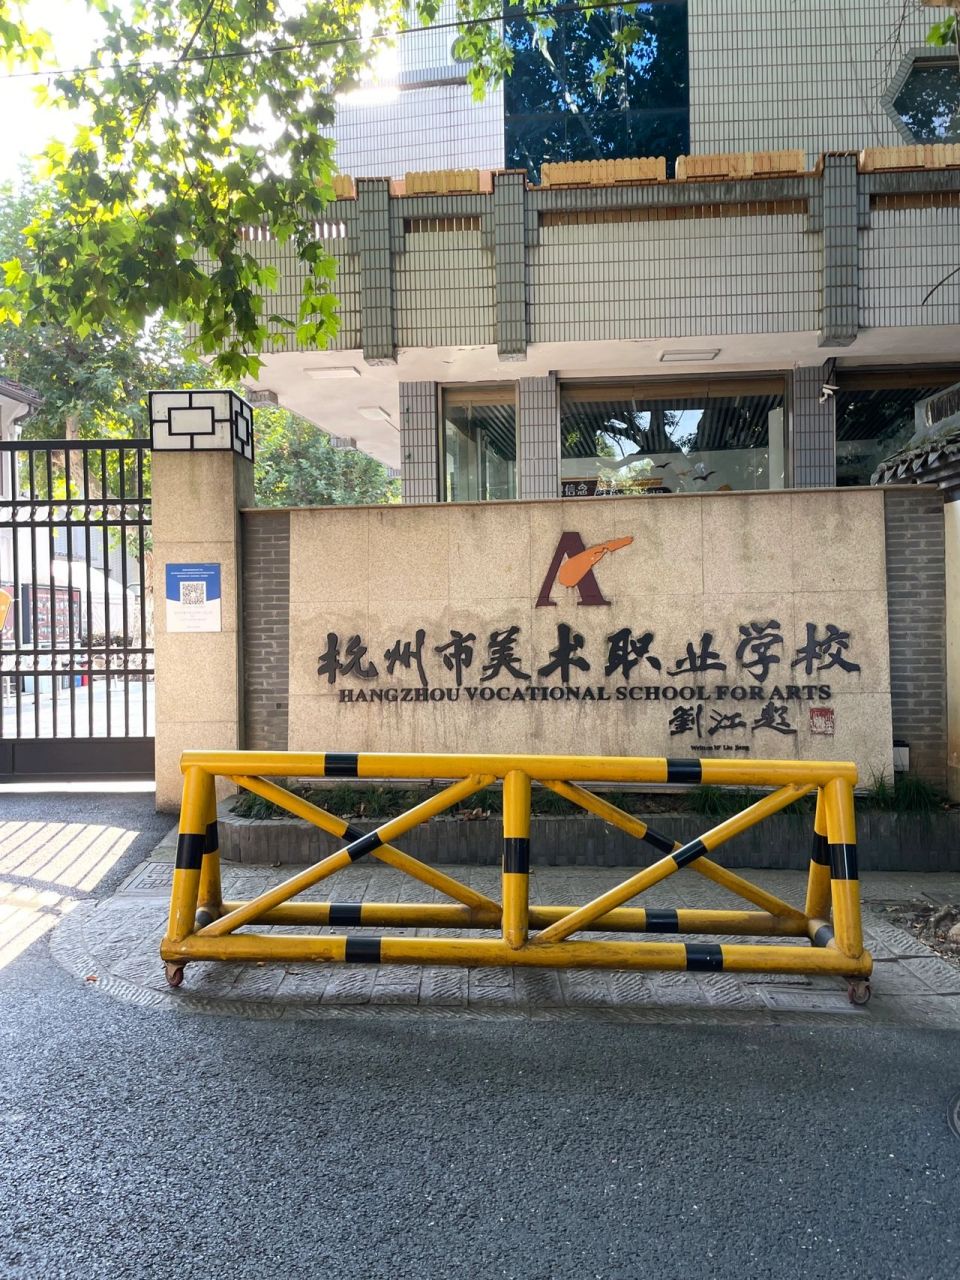 探访汤唯母校:杭州市美术职业学校 位置:杭州上城区凤凰山脚路166号